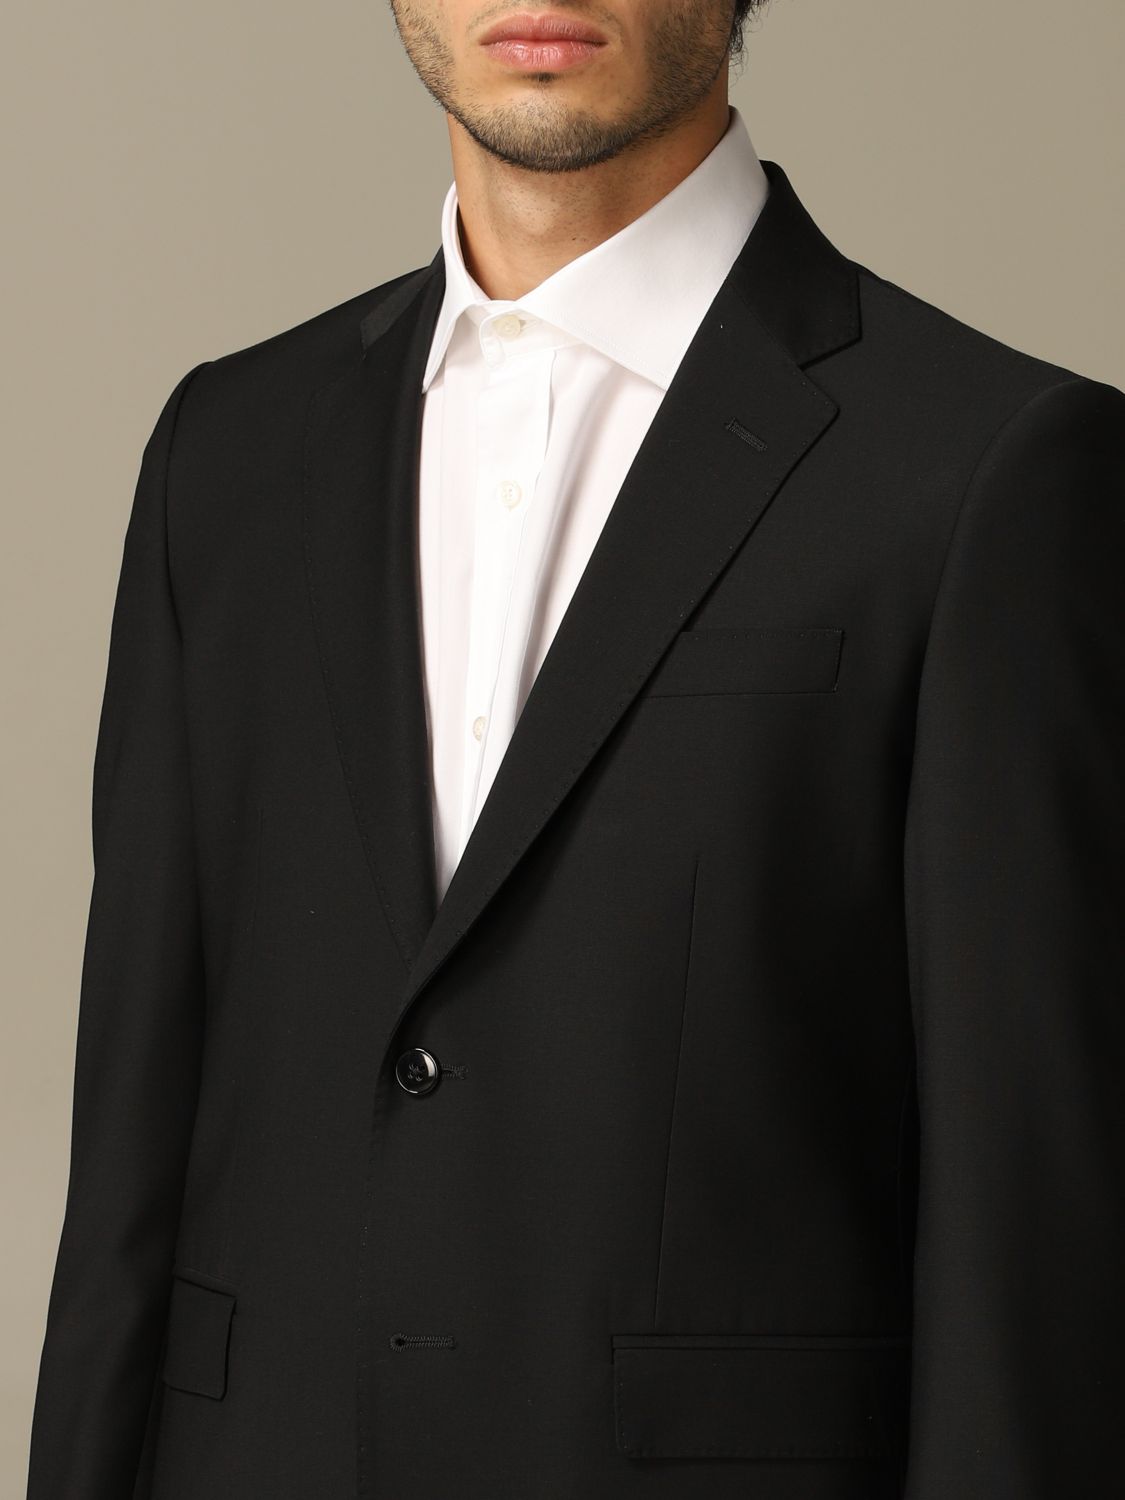 Brian Dales Outlet: 220gr drop 7 wool suit - Black | Brian Dales suit ...